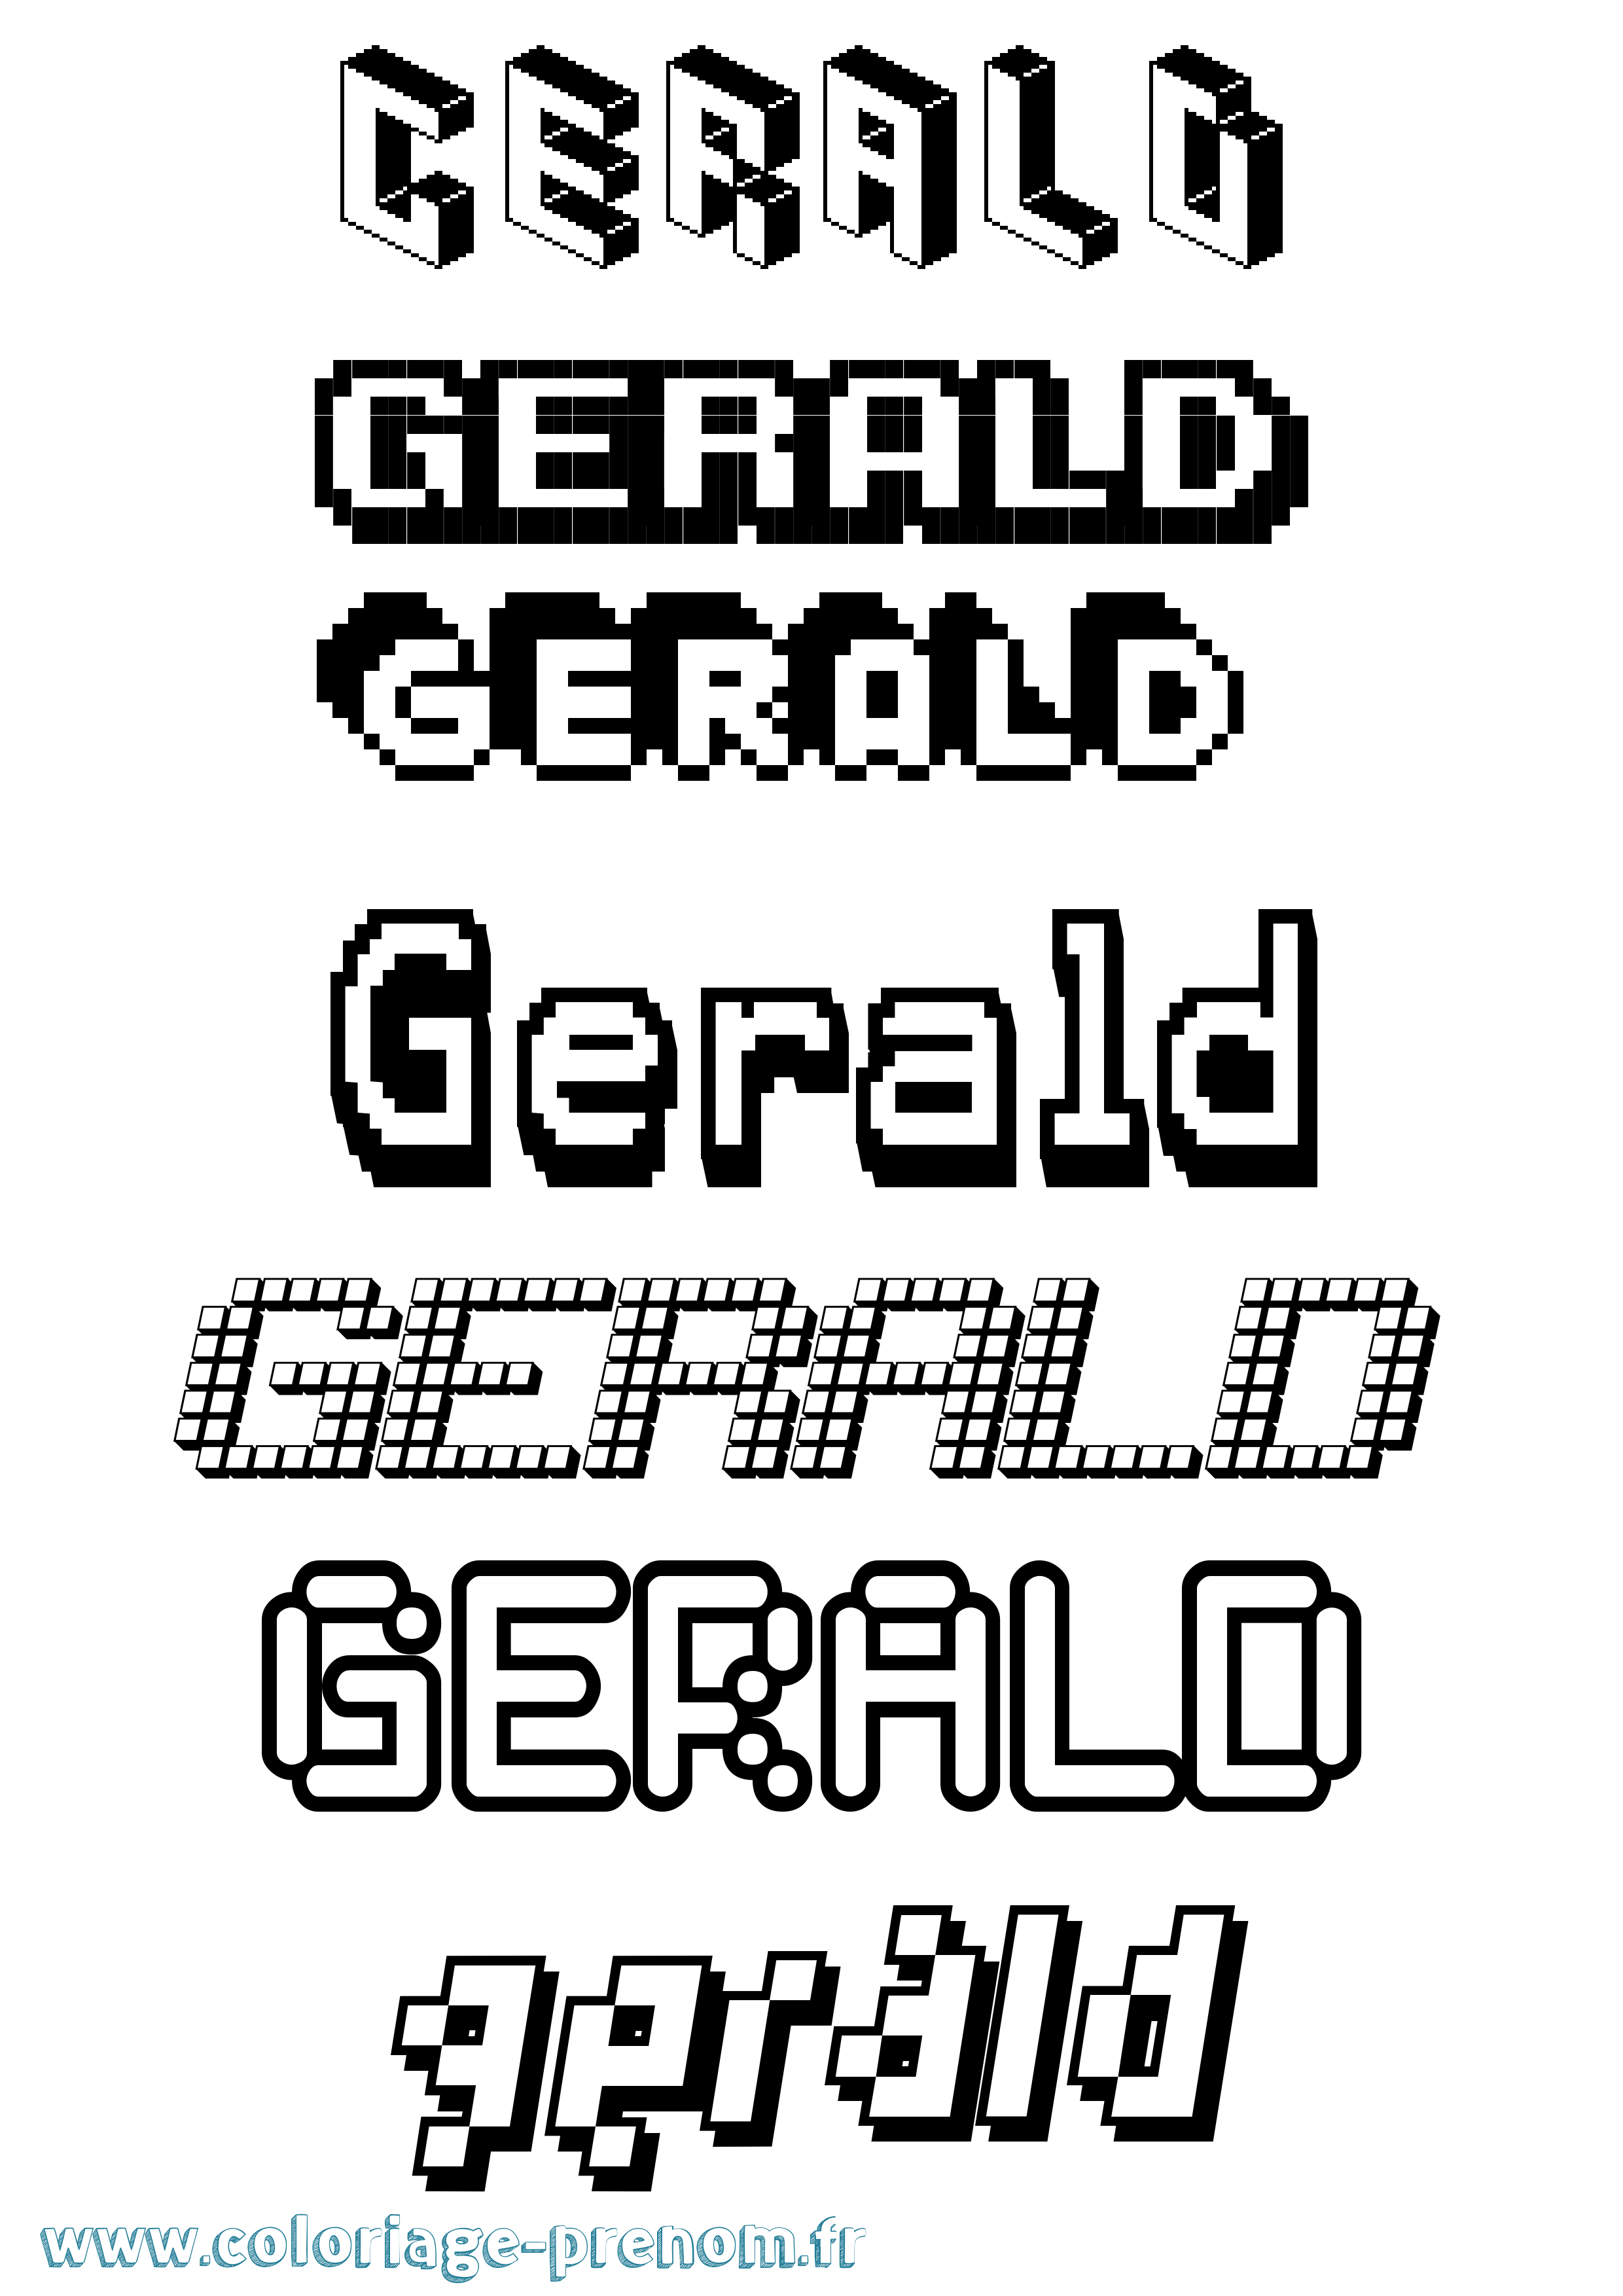 Coloriage prénom Gerald Pixel